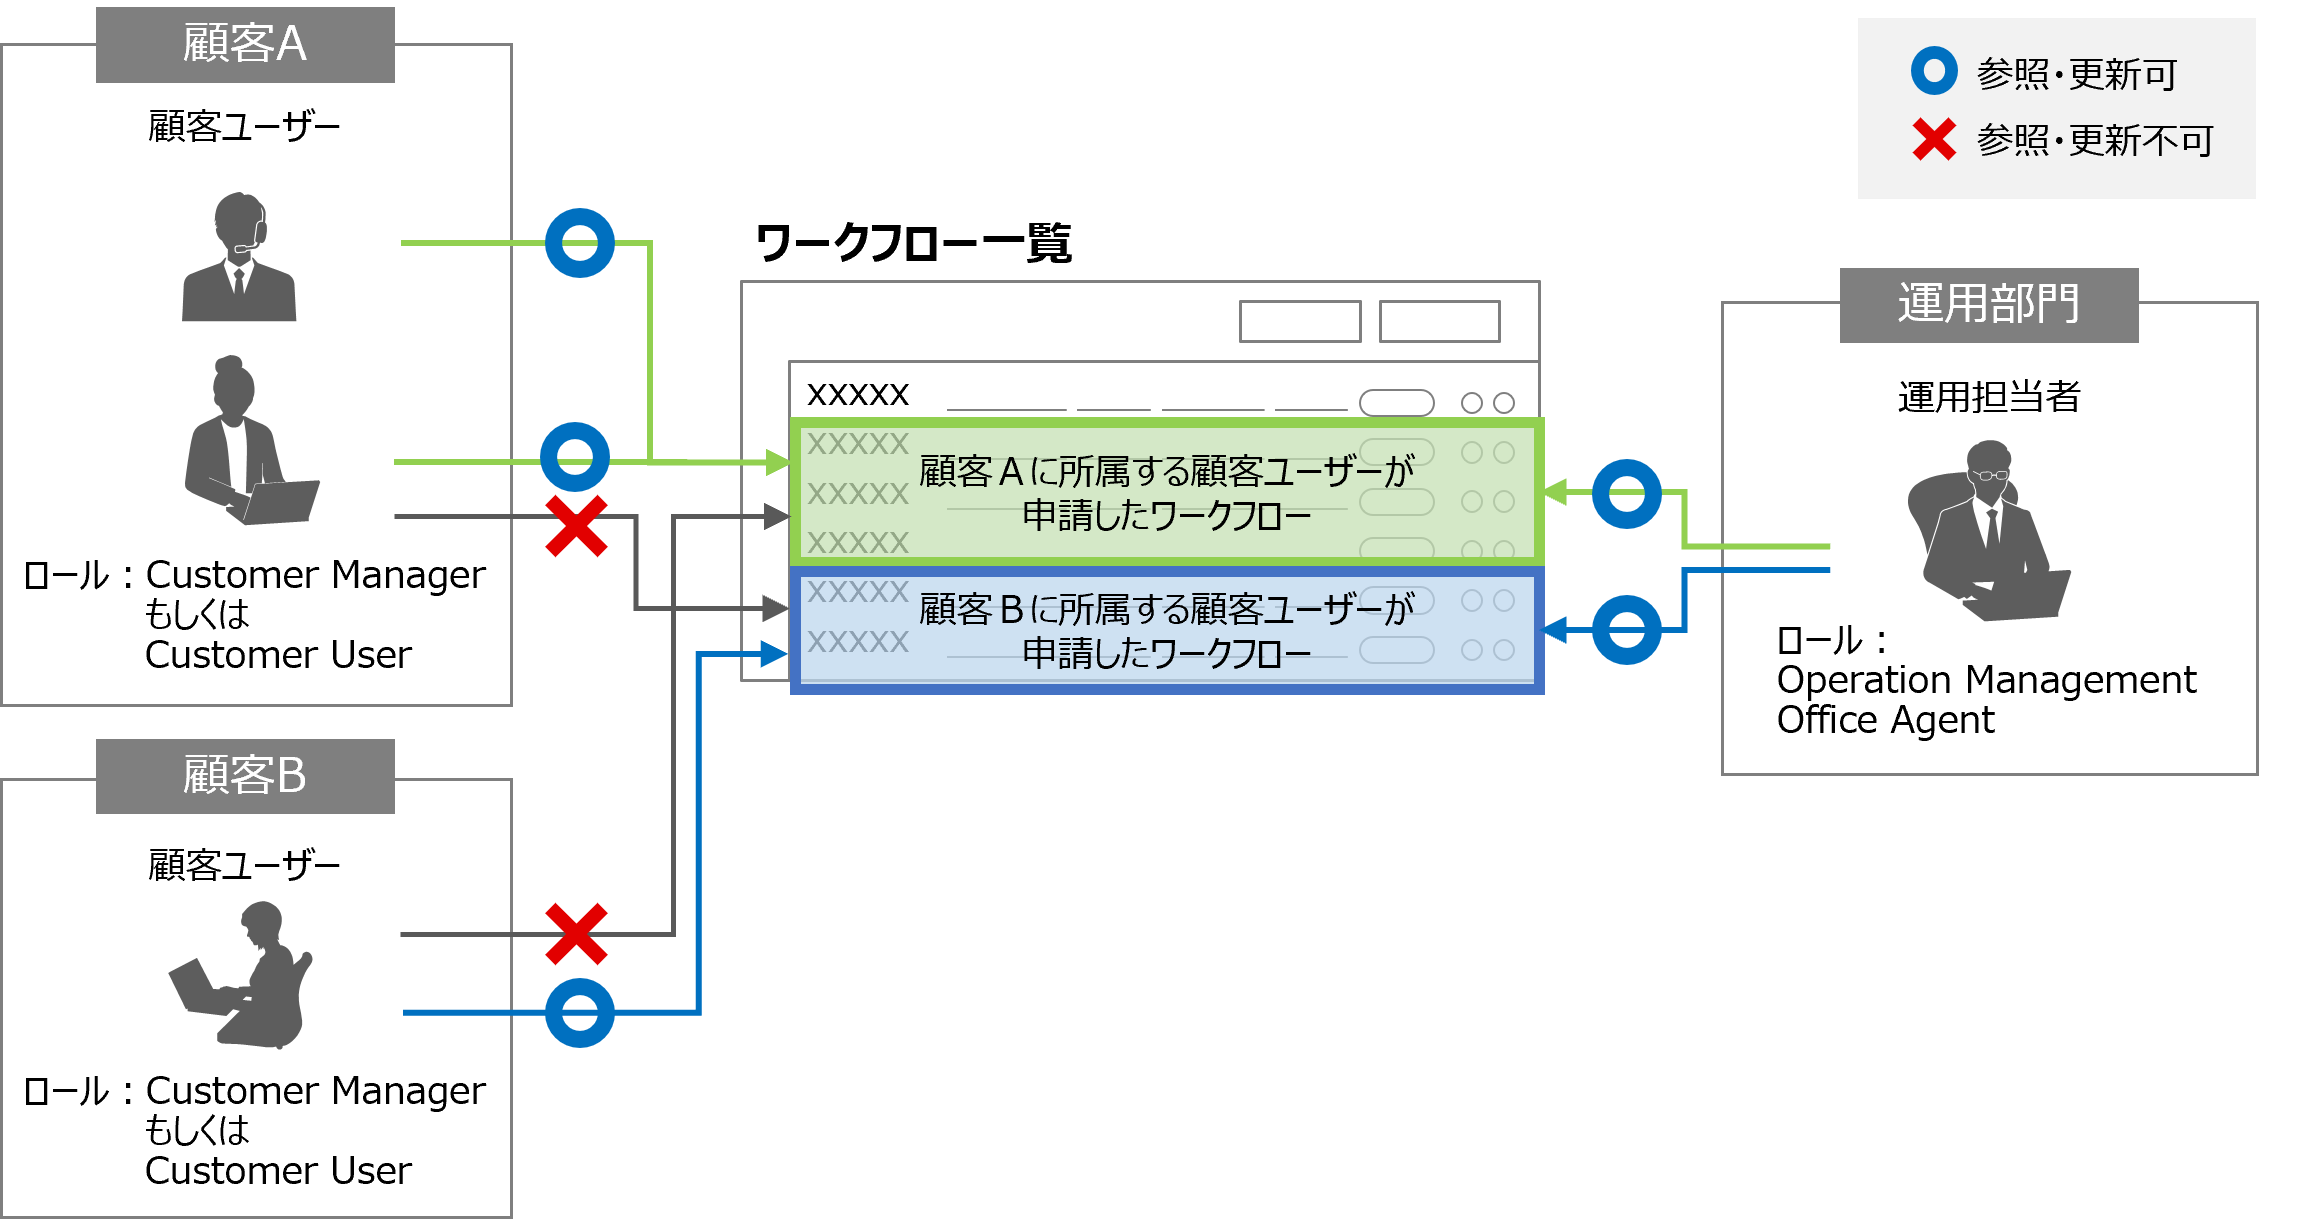 （図）ワークフロー一覧画面に対するロールによるアクセス制御